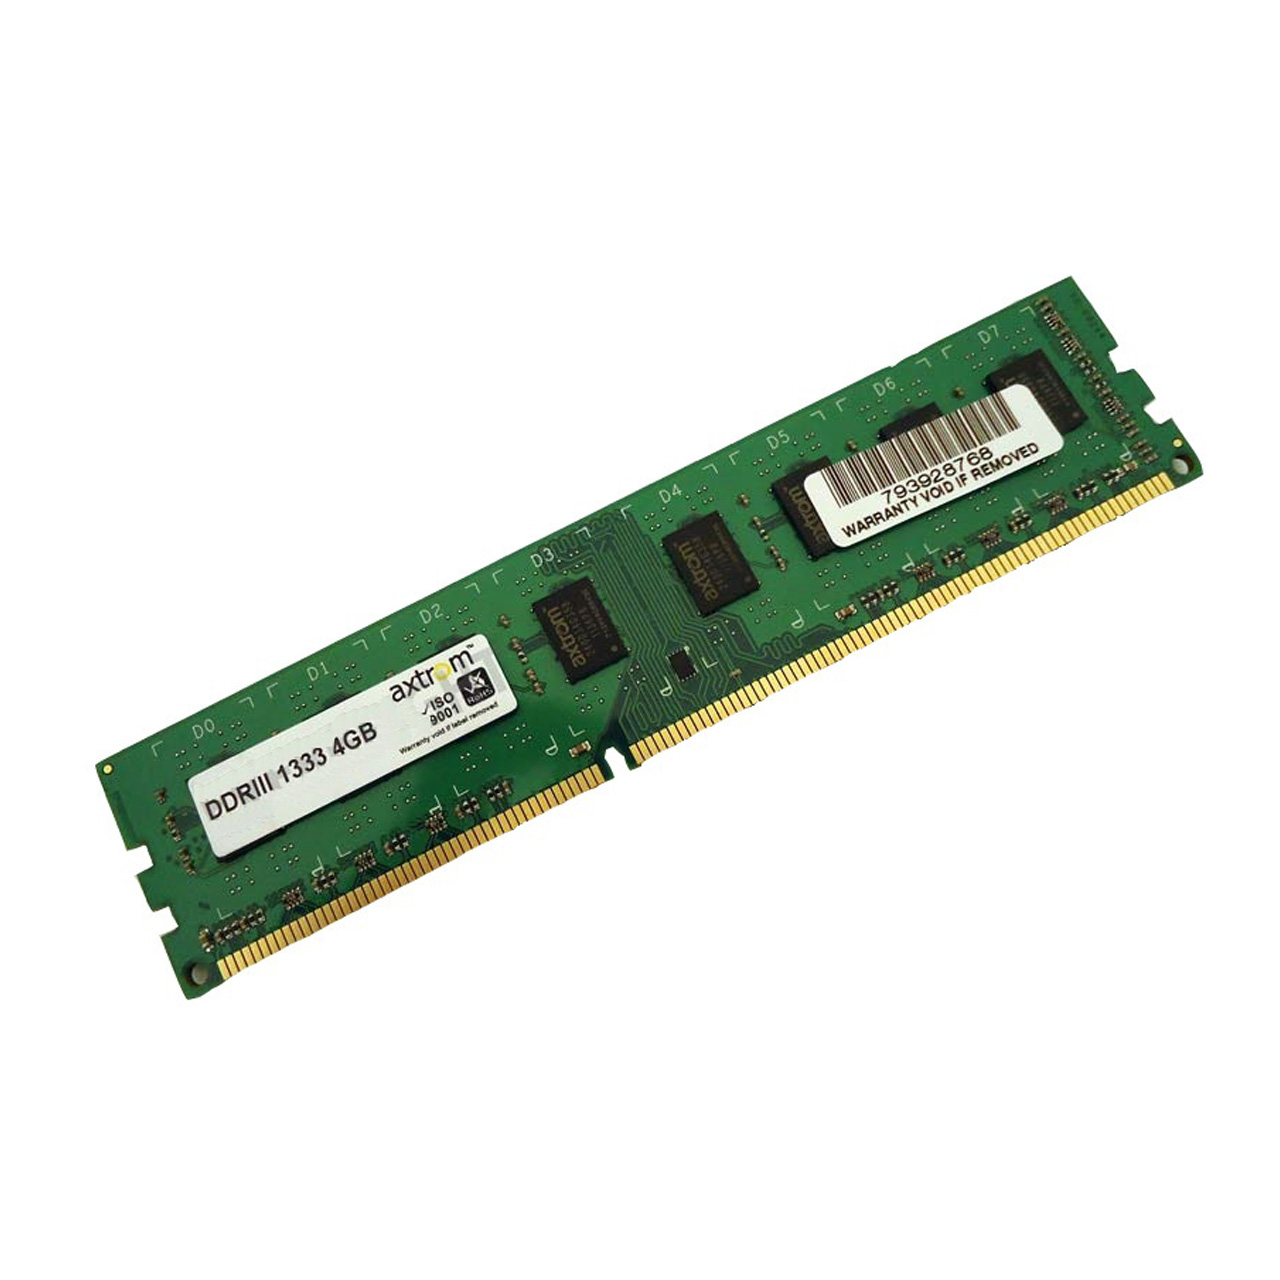 رم دسکتاپ DDR3 تک کاناله 1333 مگاهرتز اکستروم ظرفیت 4 گیگابایت